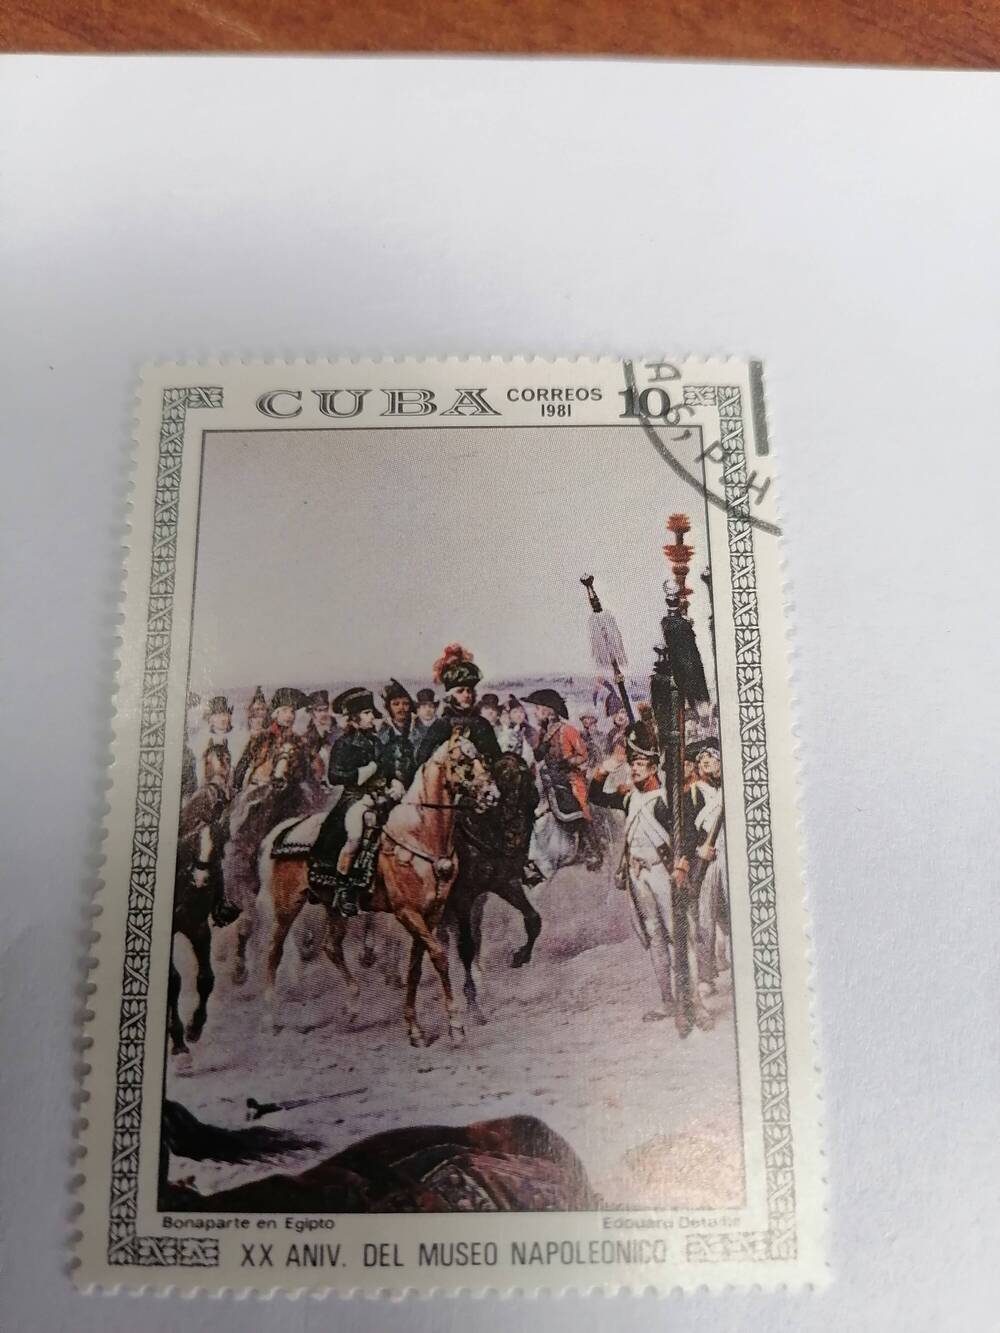 Марка почтовая гашеная, Куба, 1981 г,Cuba, Correos, XX ANIV Del Muzeo Napoleoneco, Donaparte en Egipto